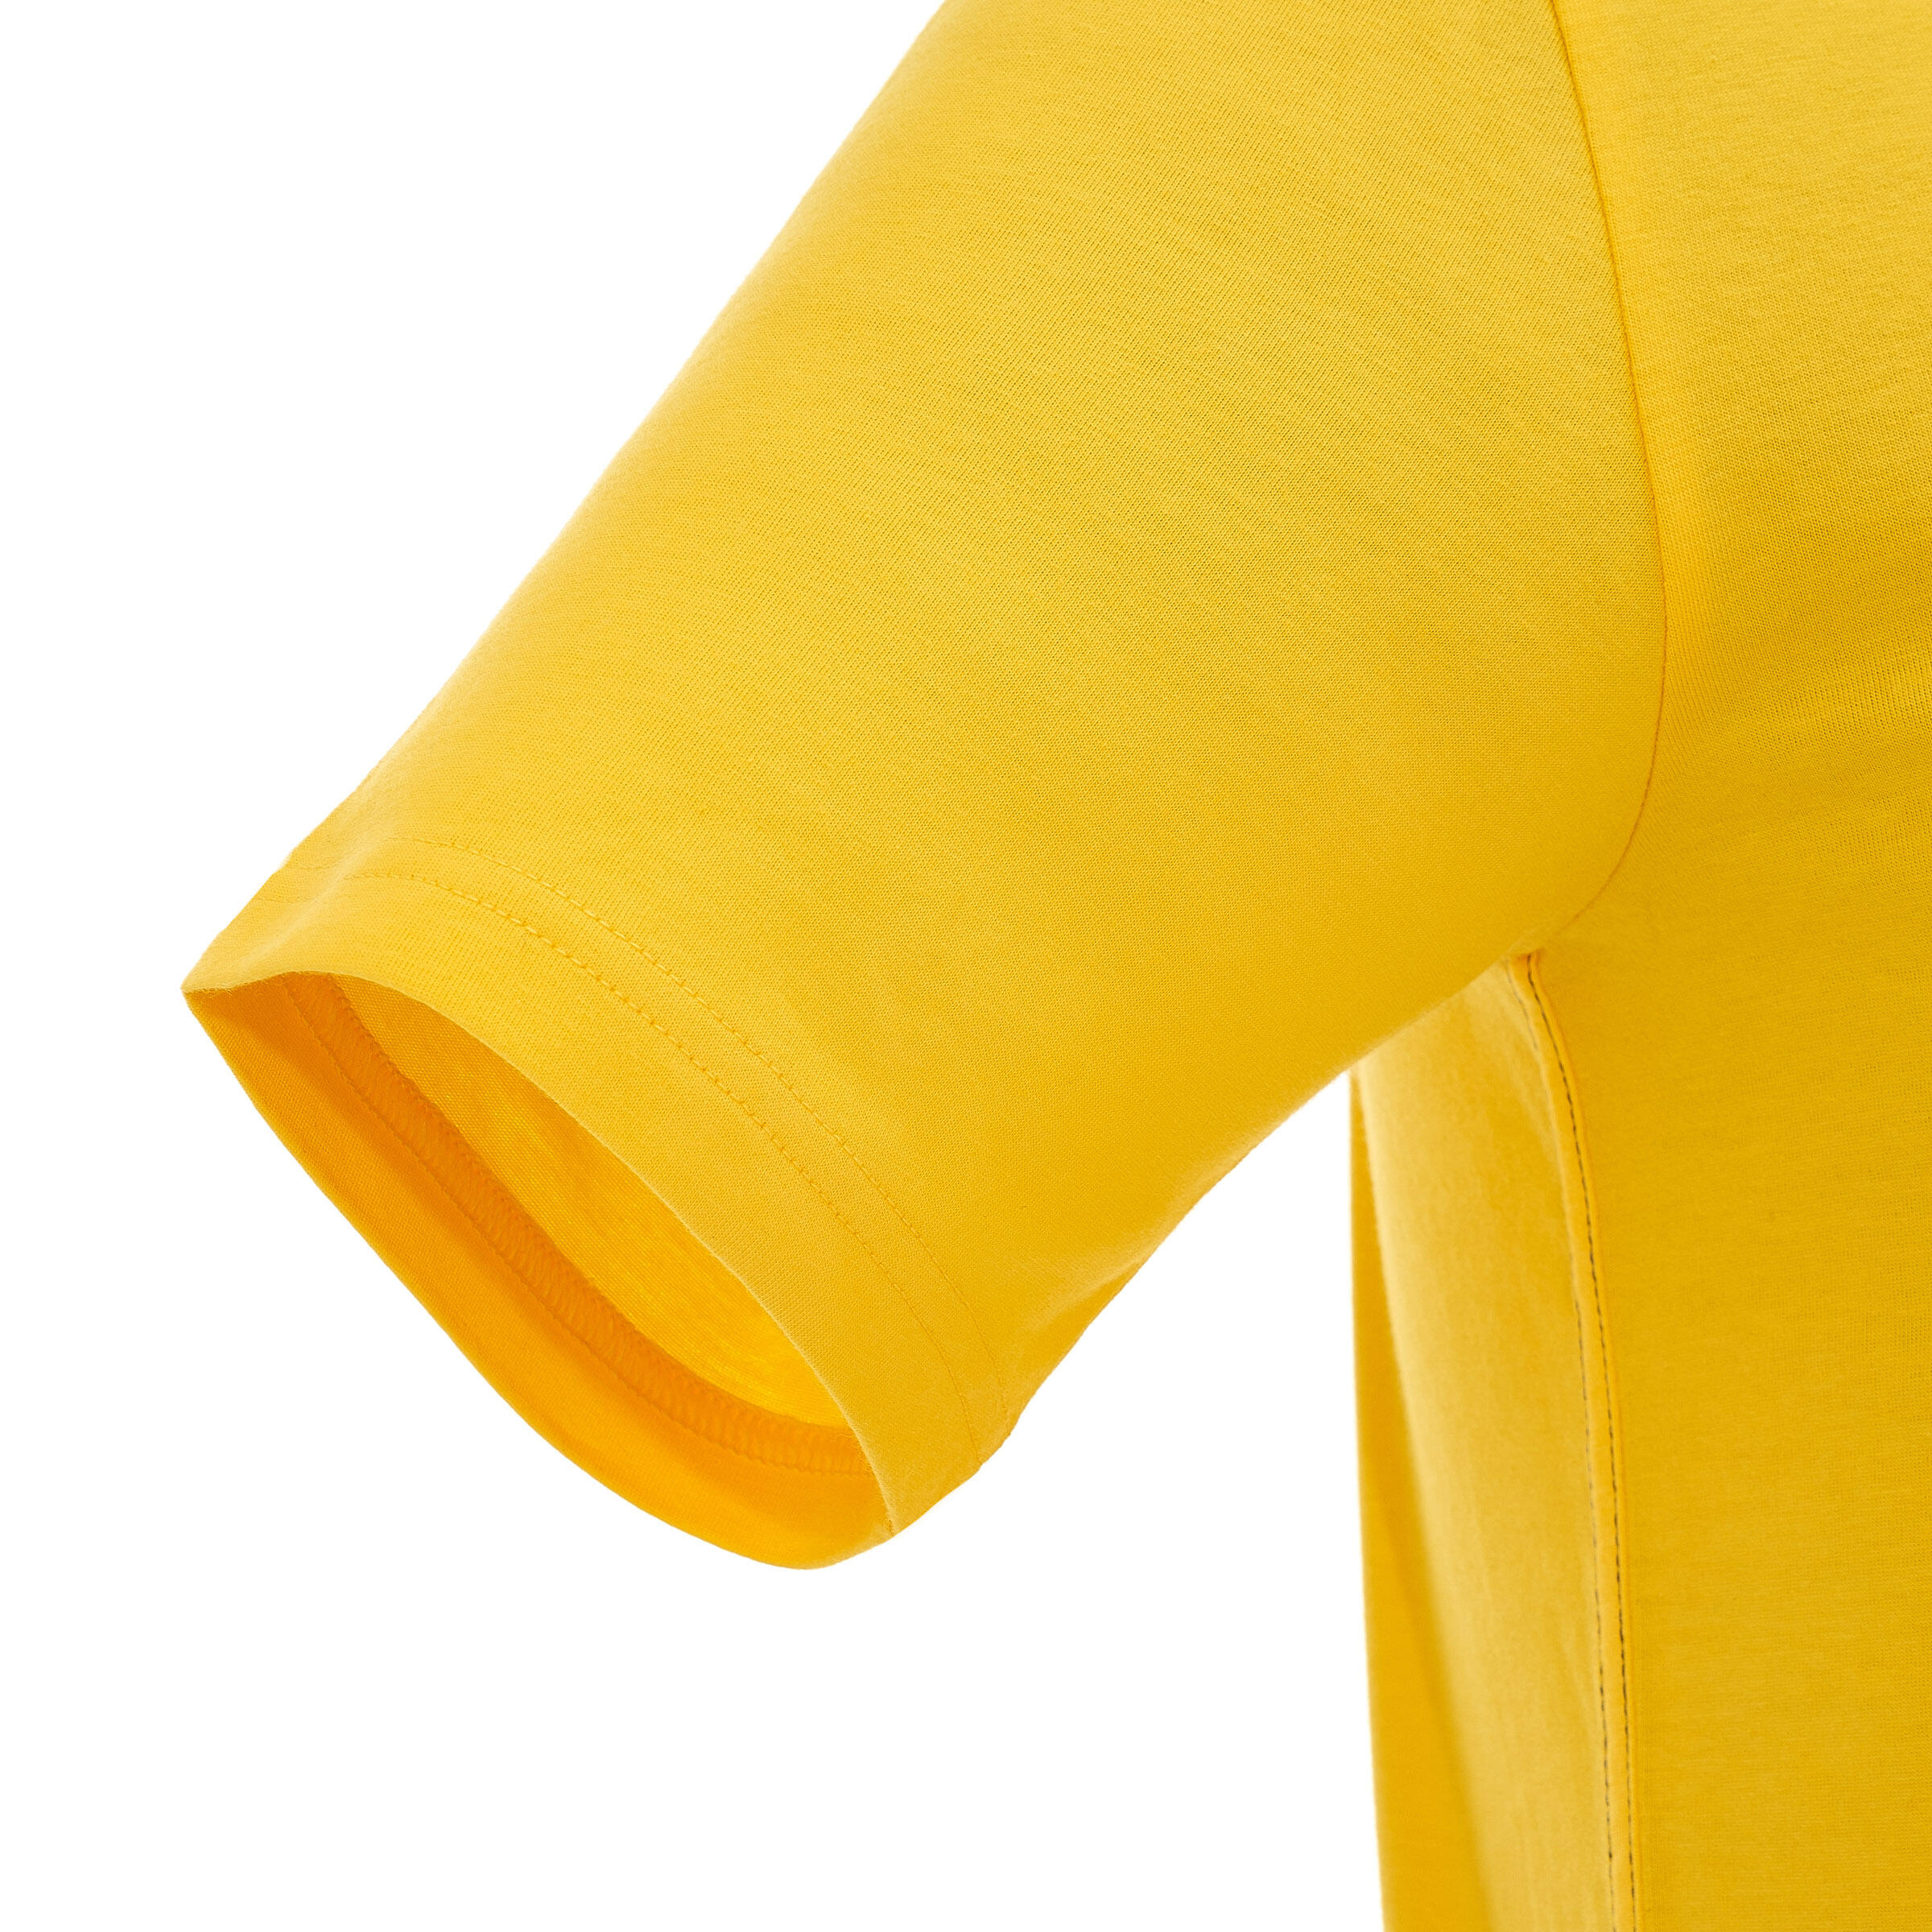 TechTIL 100 Men's Short-Sleeve Hiking T-Shirt - Yellow 10/10